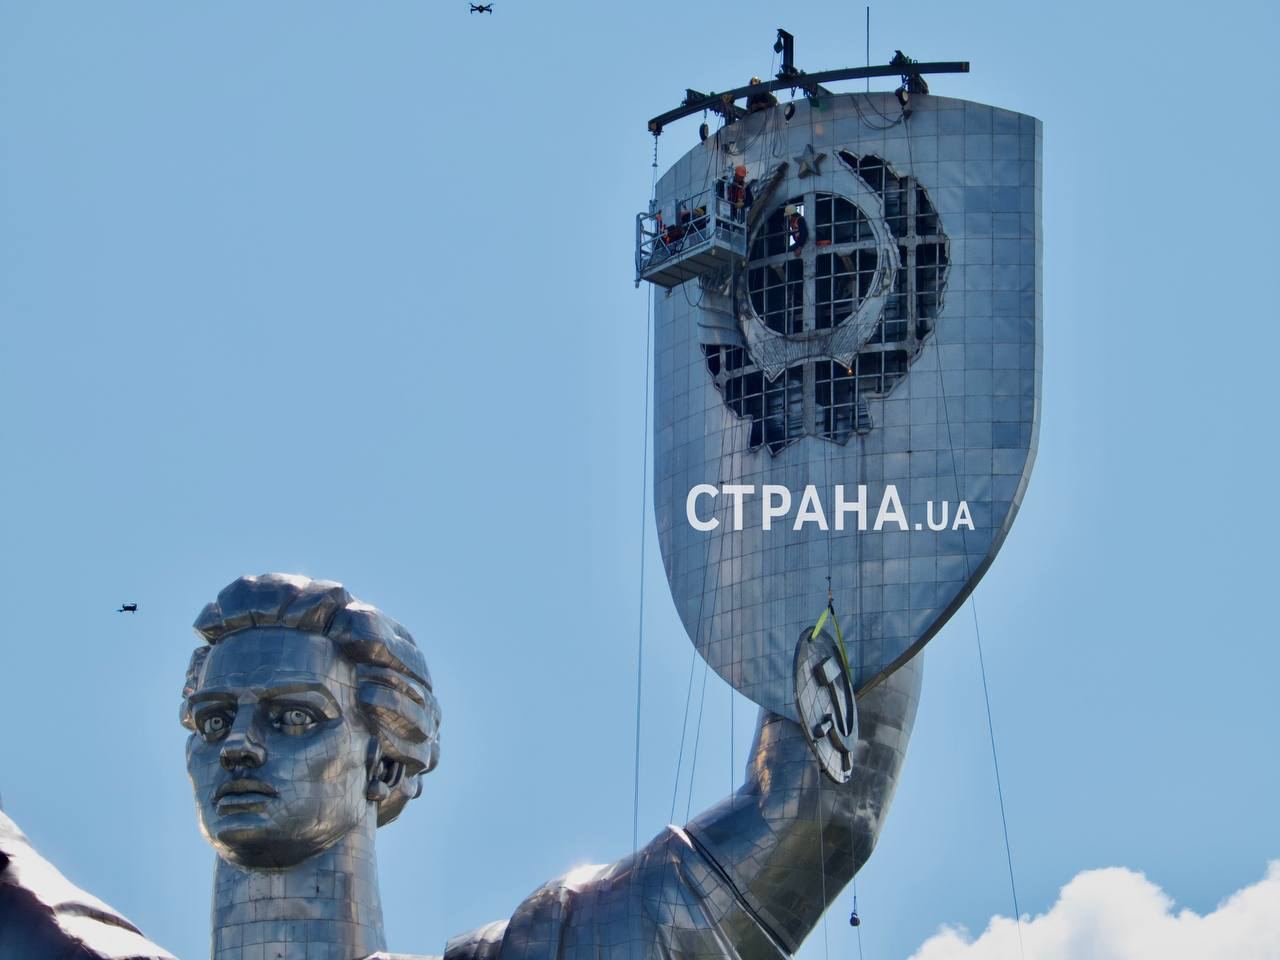 памятник родина мать в москве